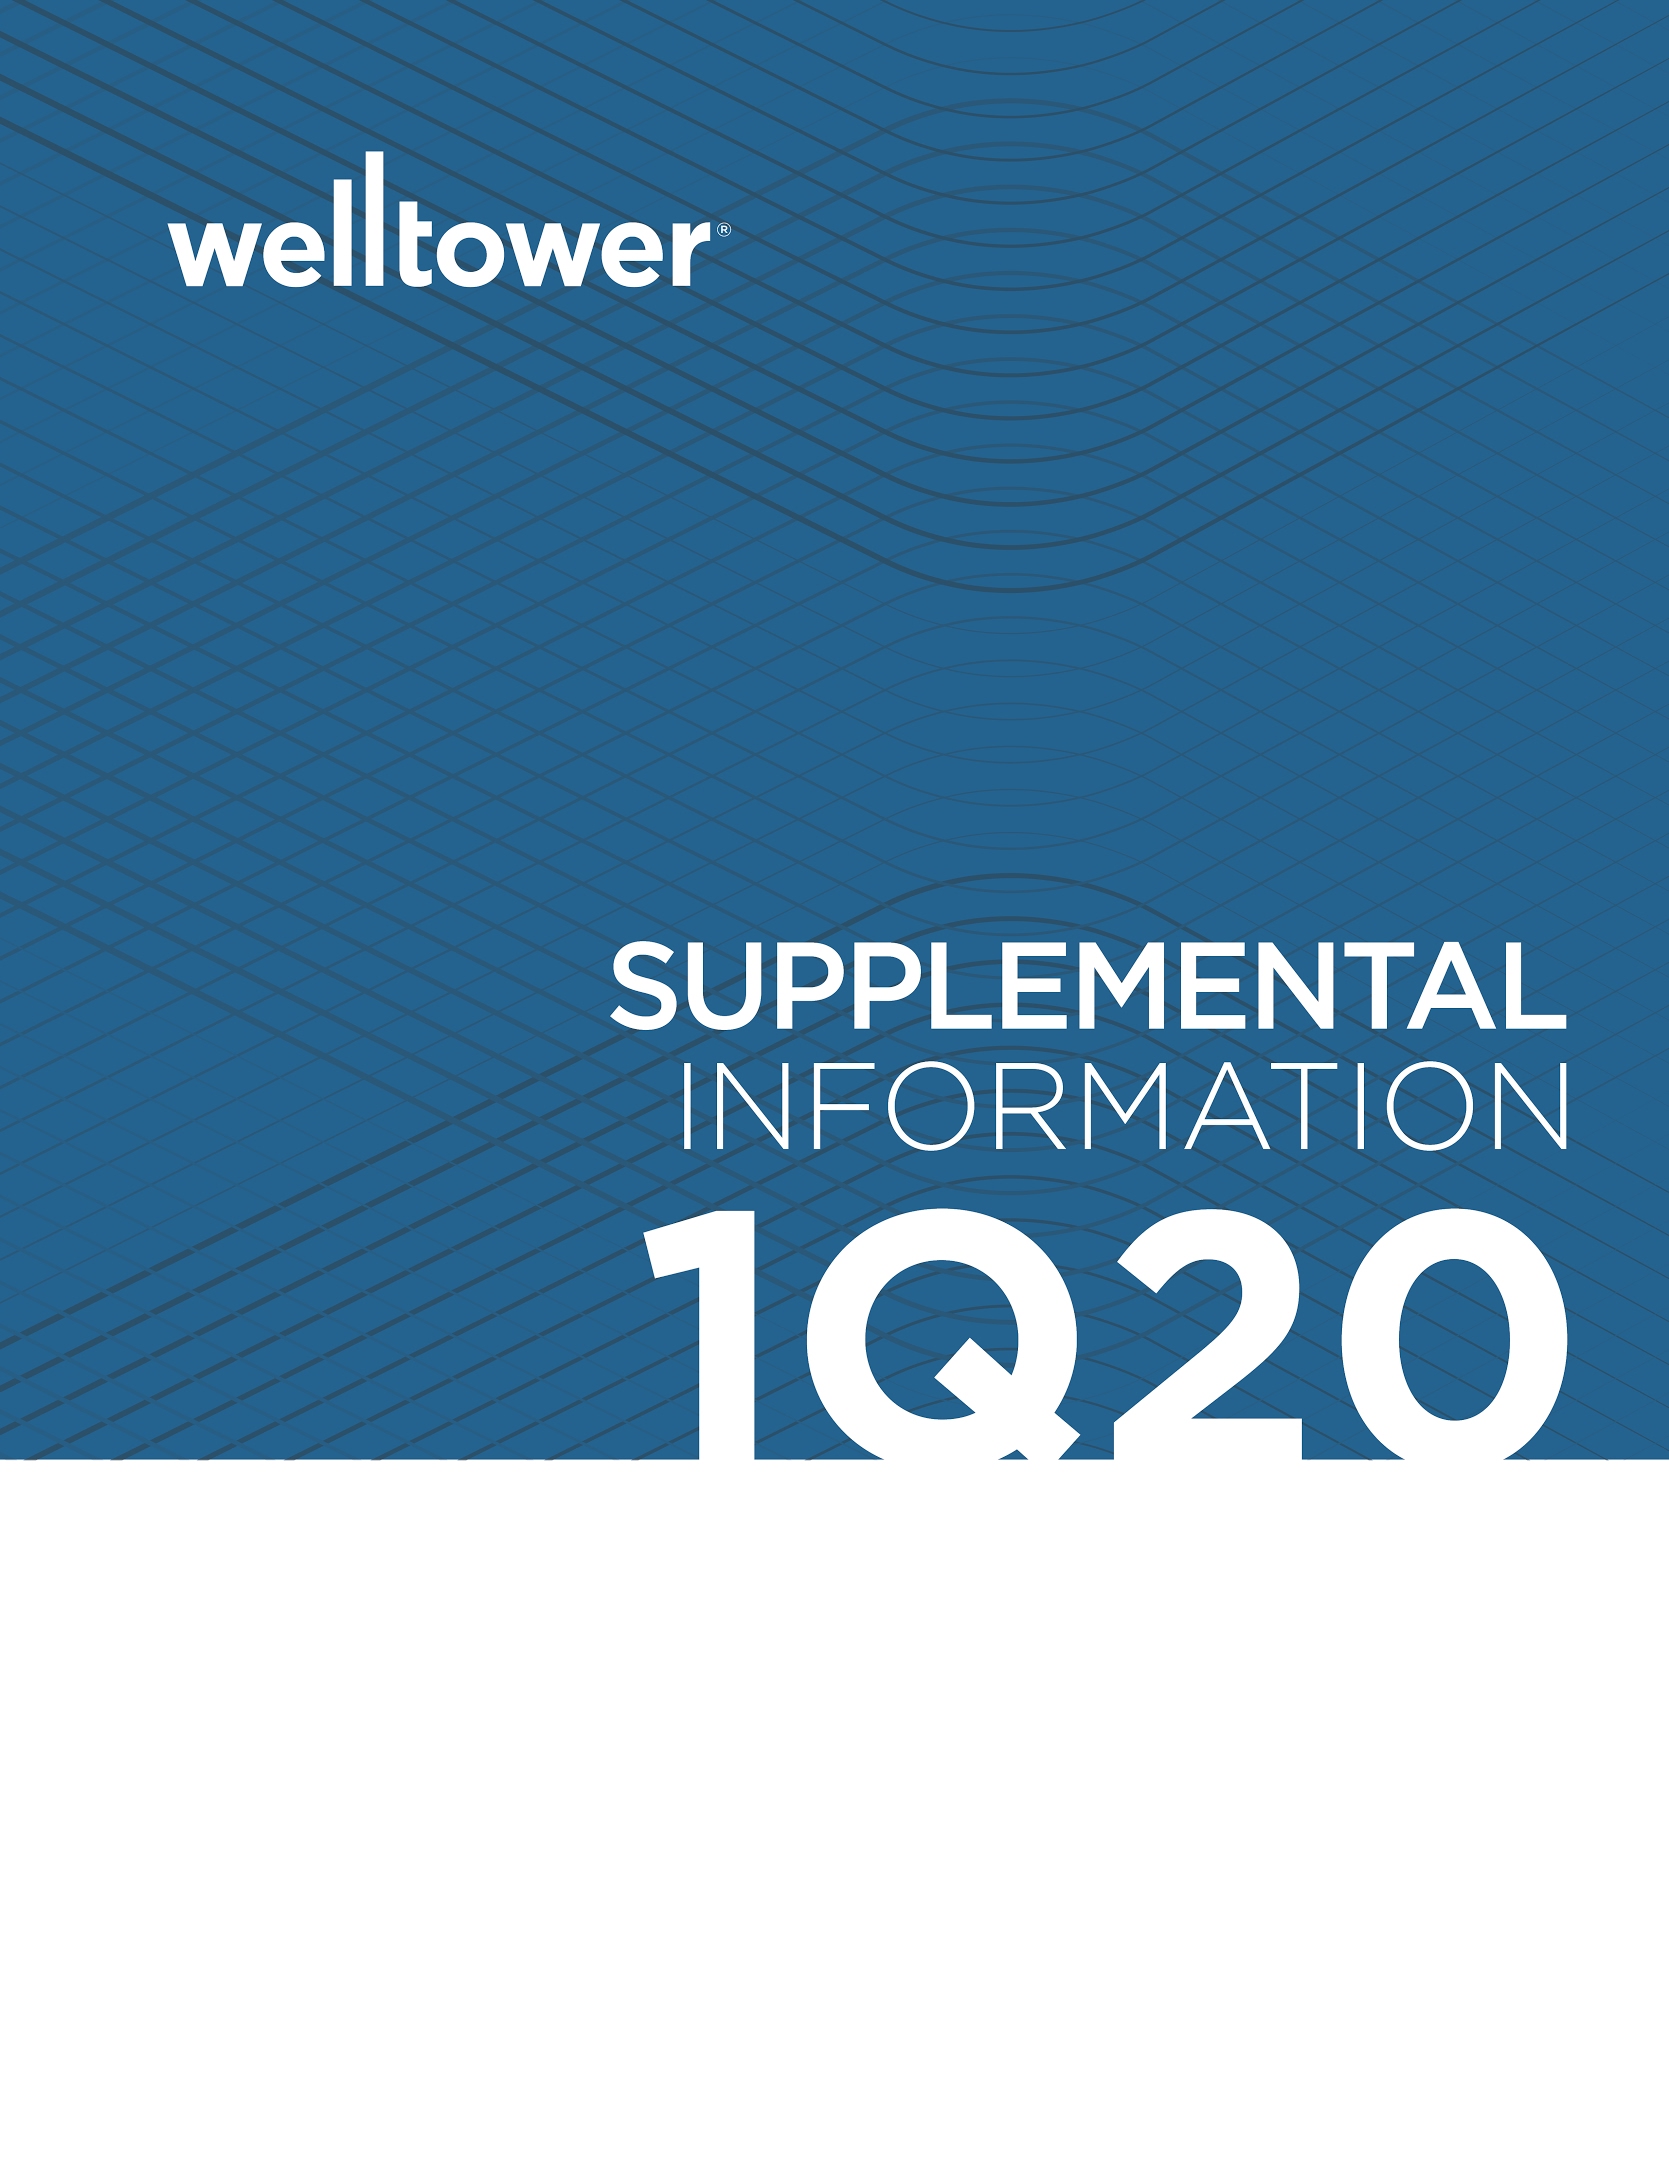 welltowersupplemental1q20200.jpg